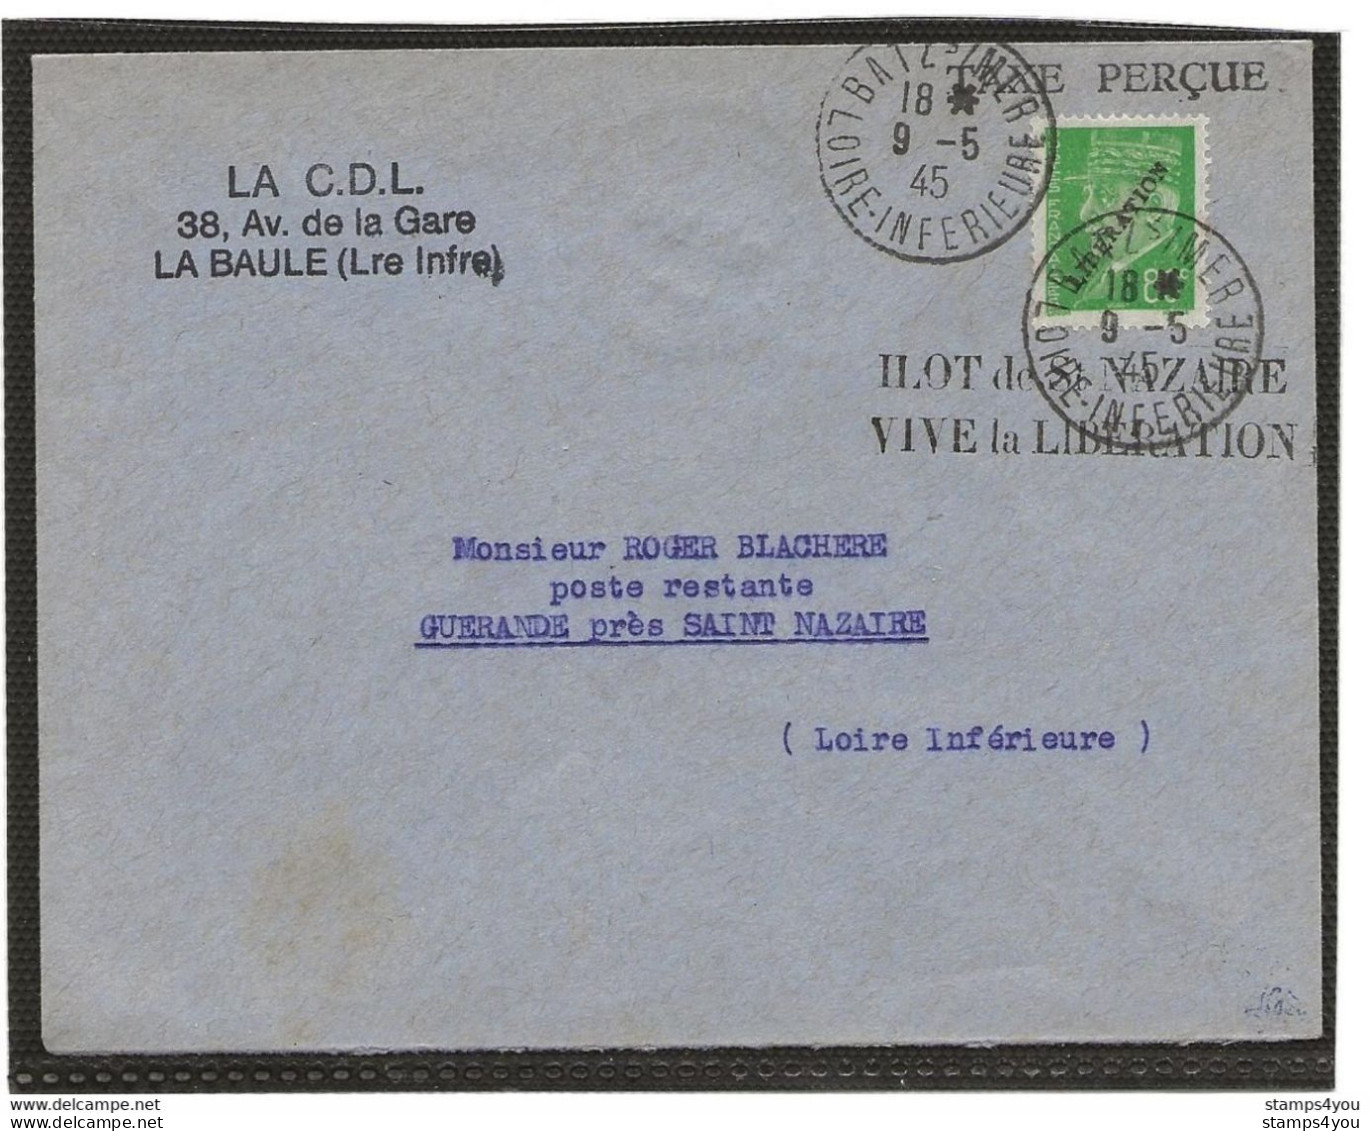 150 - 76 - Superbe Enveloppe Avec Timbre Libération - Ilot De St Nazaire Vive La Libération 19.5.1945 - WO2